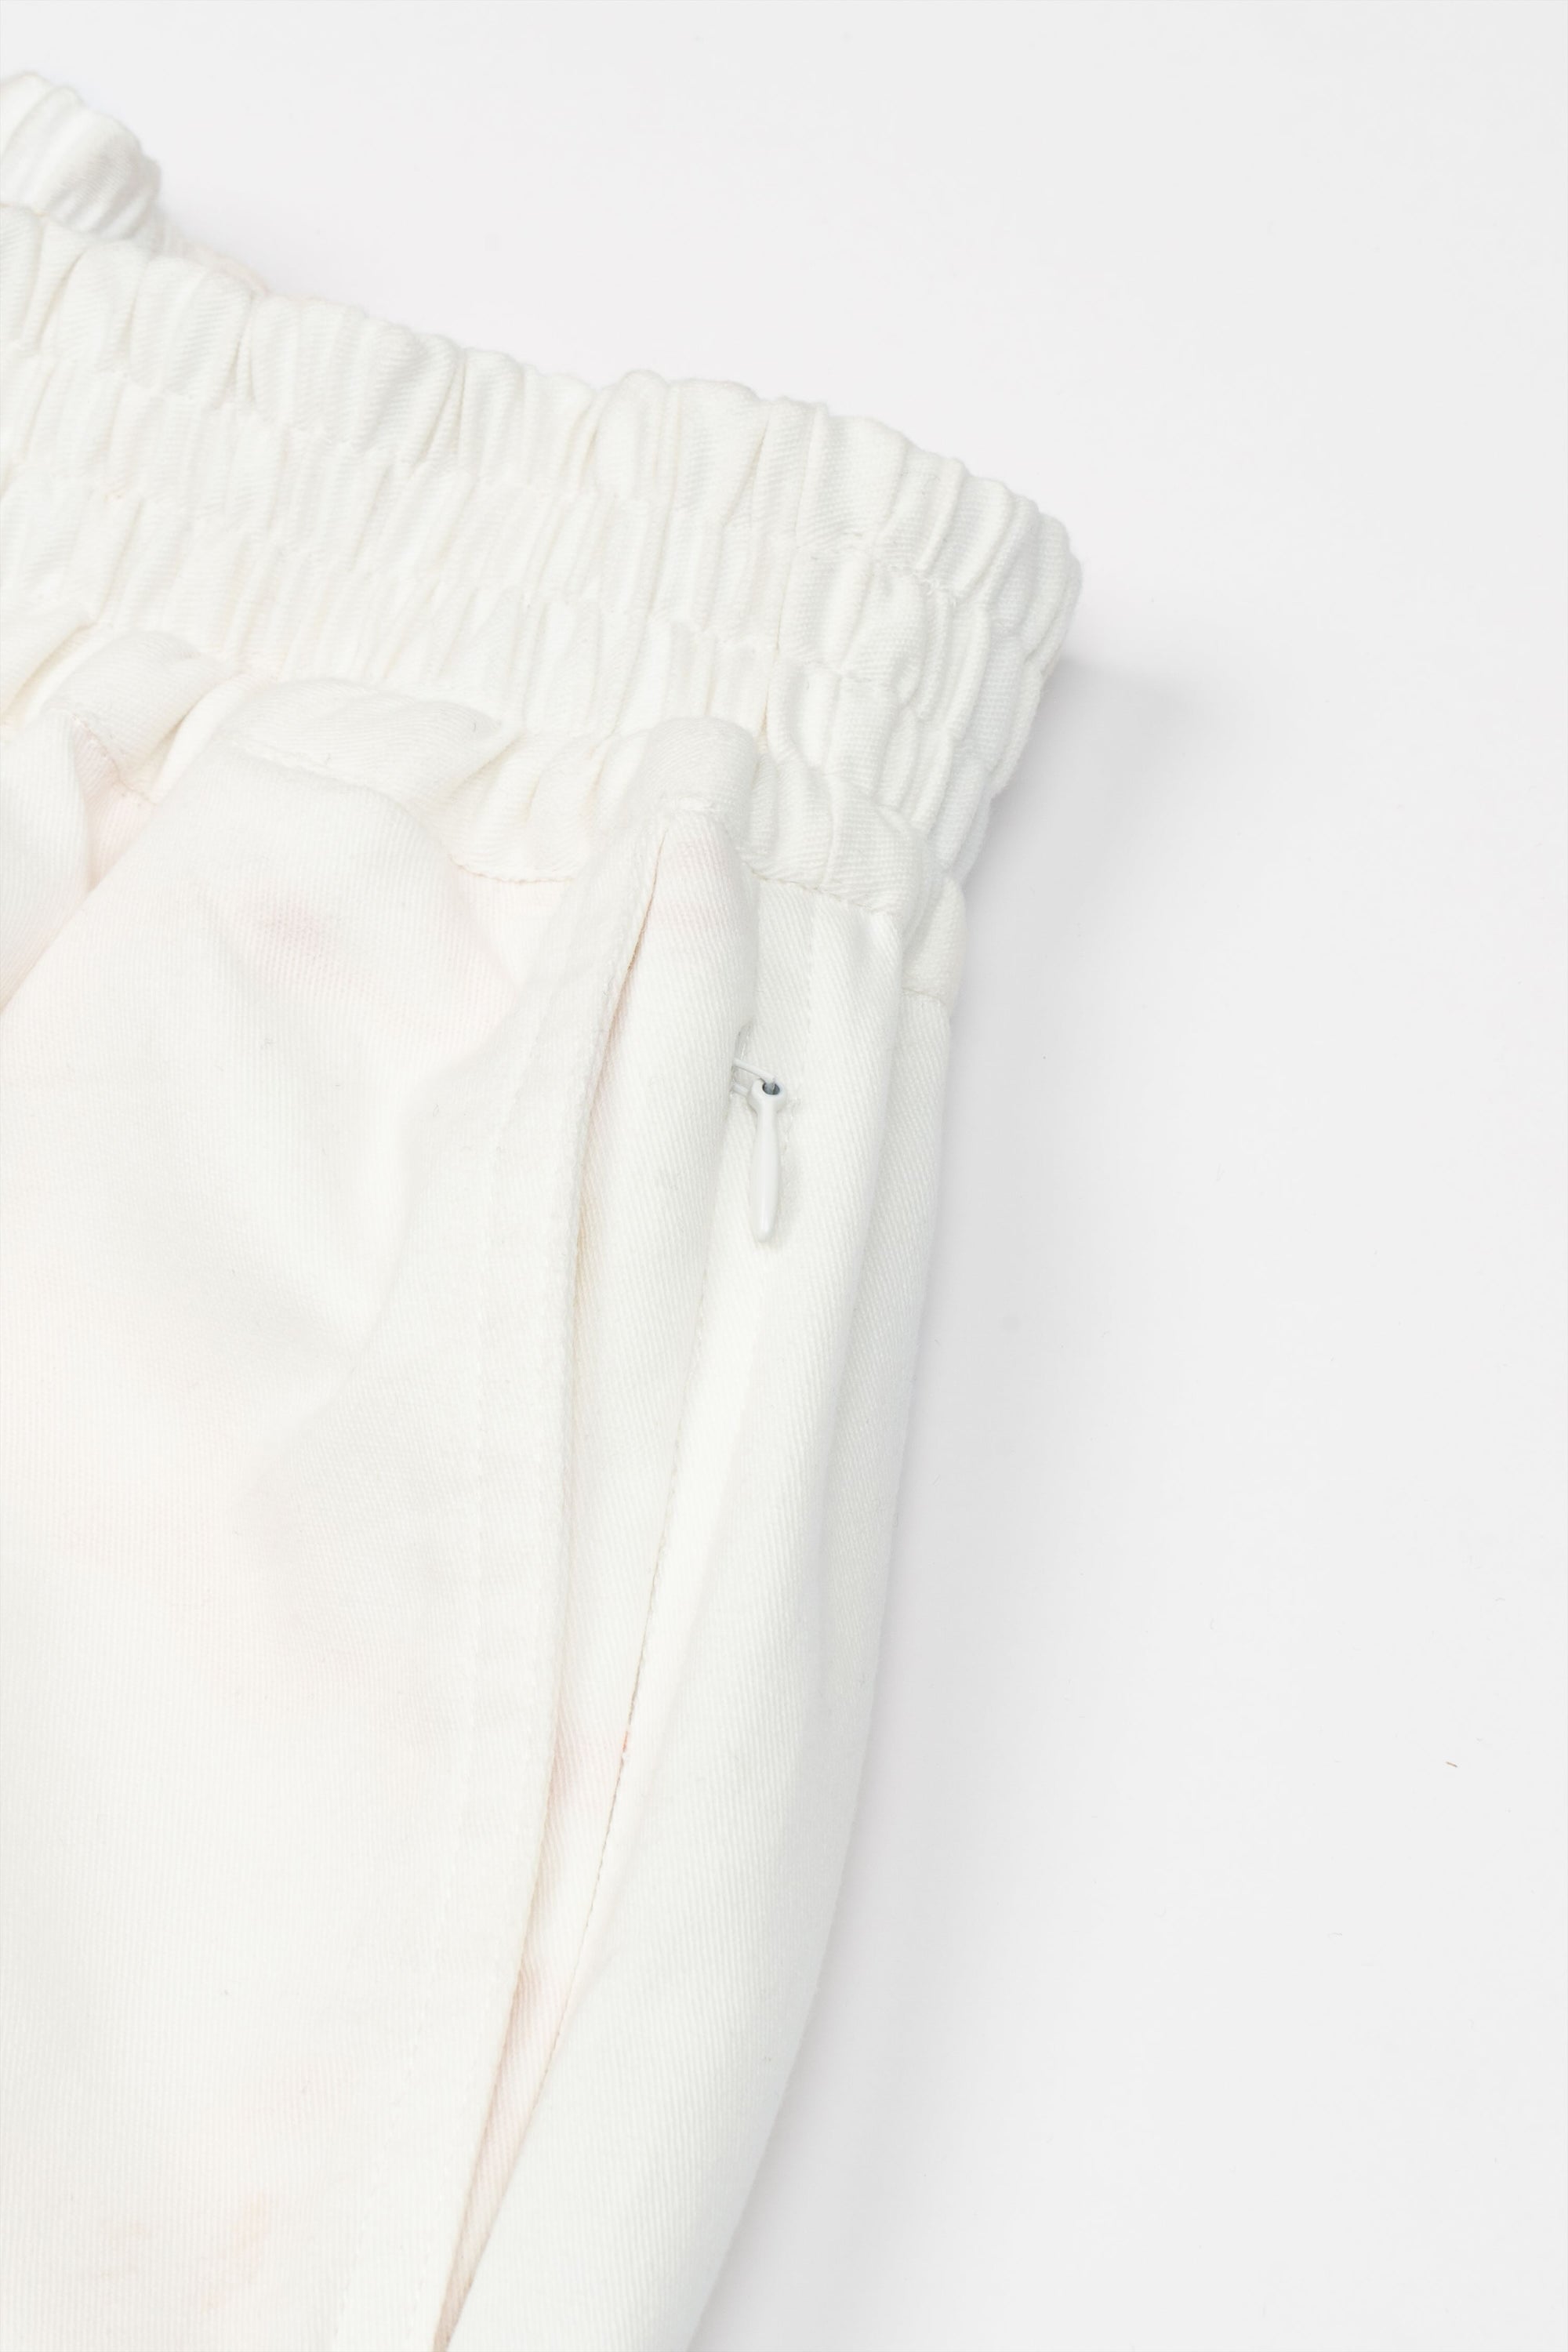 Recraft Walk Wear 002 - Oversized Pocket Pants White